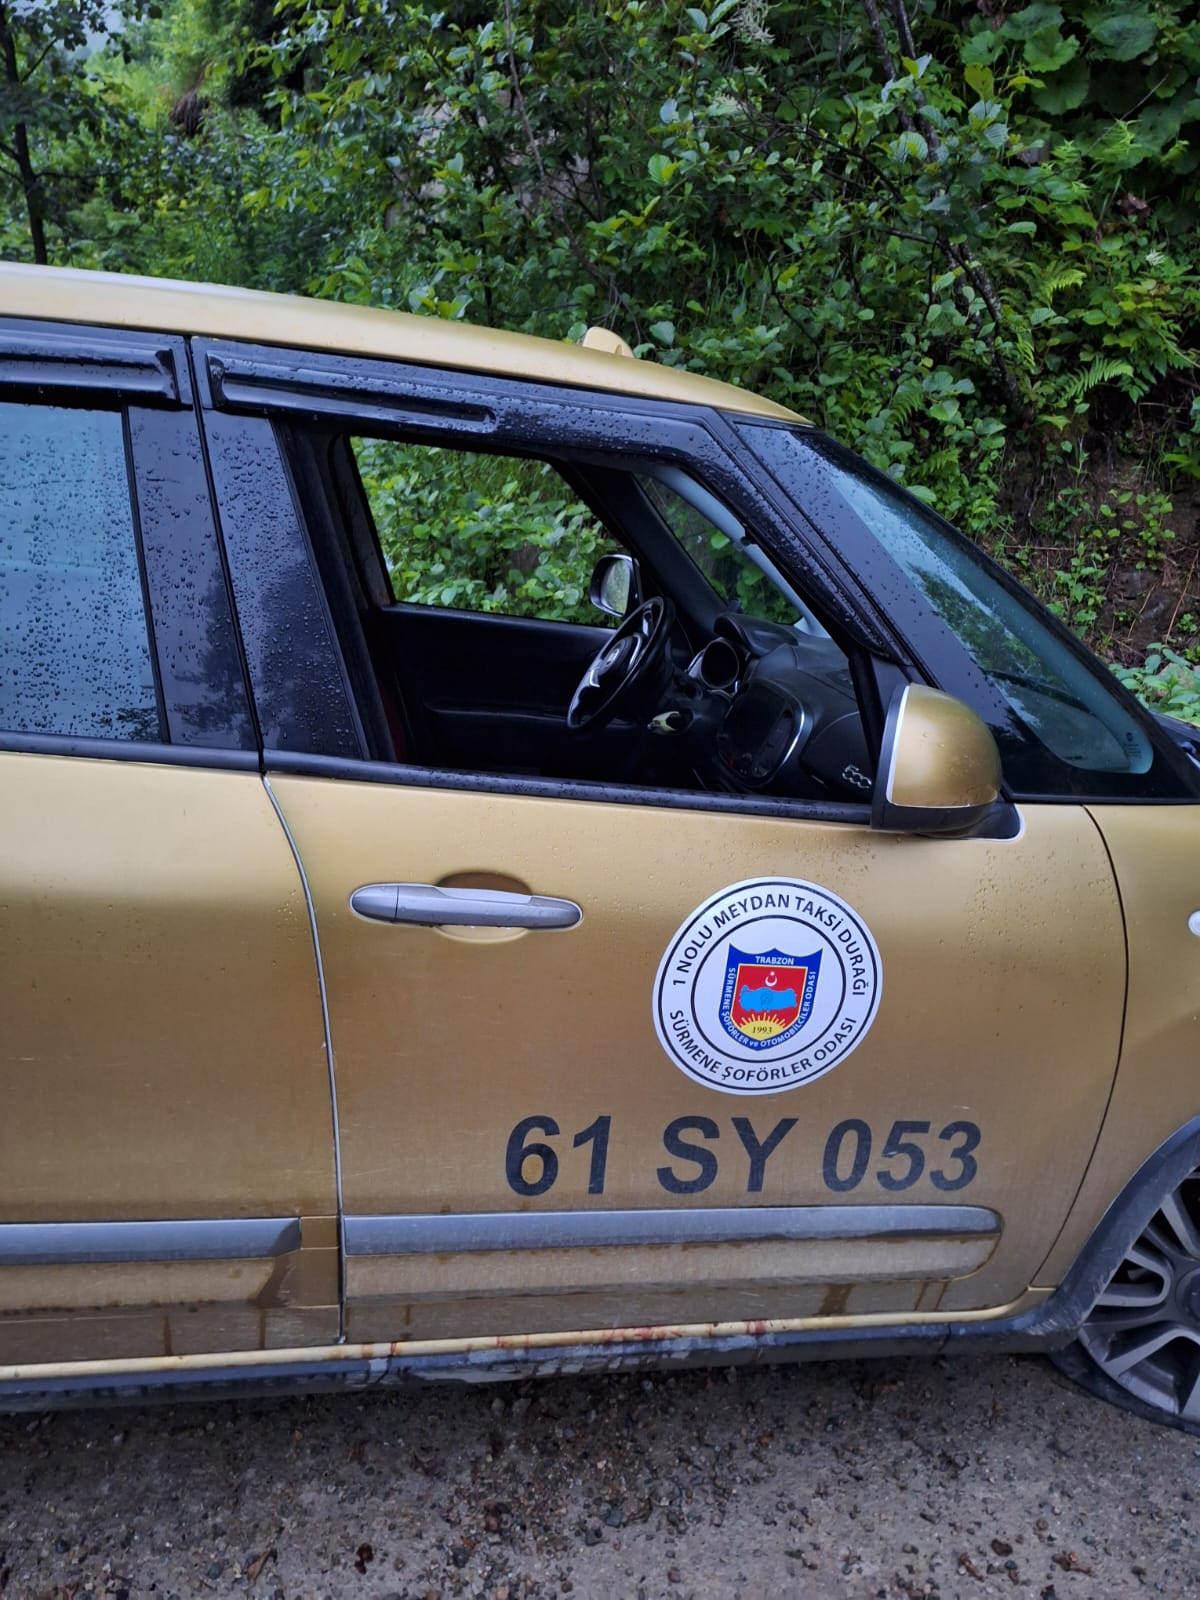 Her satırı dehşet! İşte Trabzon'daki taksici cinayetinin ayrıntıları: İlk bakın ne yapmış